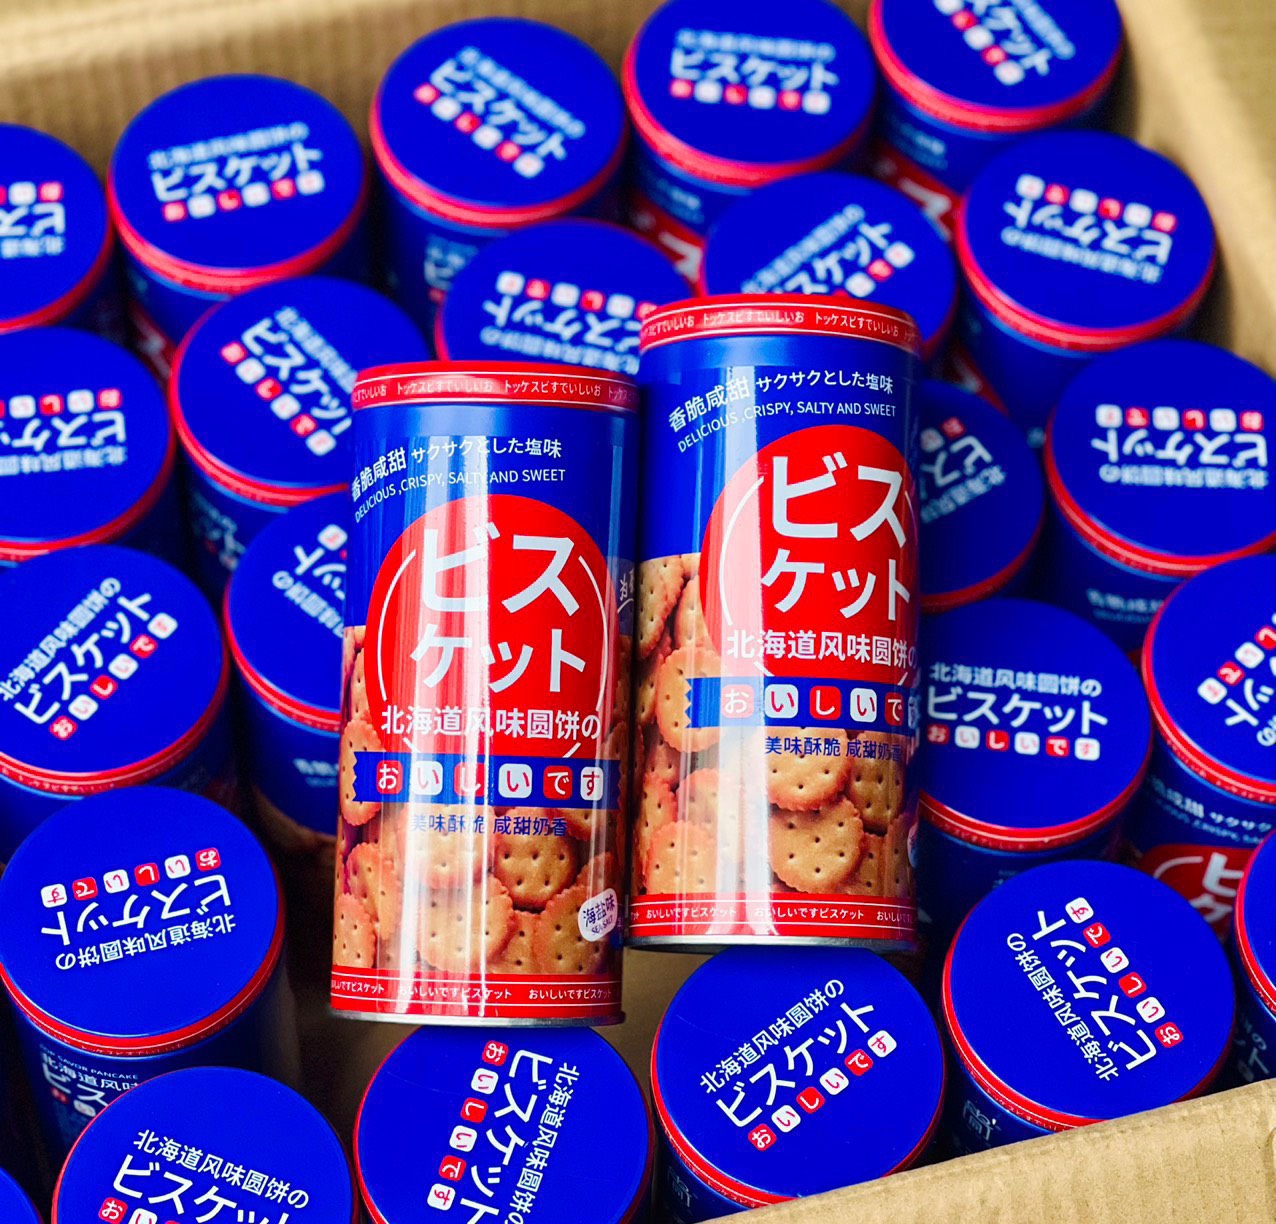 Bánh quy mặn Nhật bản 138gr- Hộp nhôm sang trọng